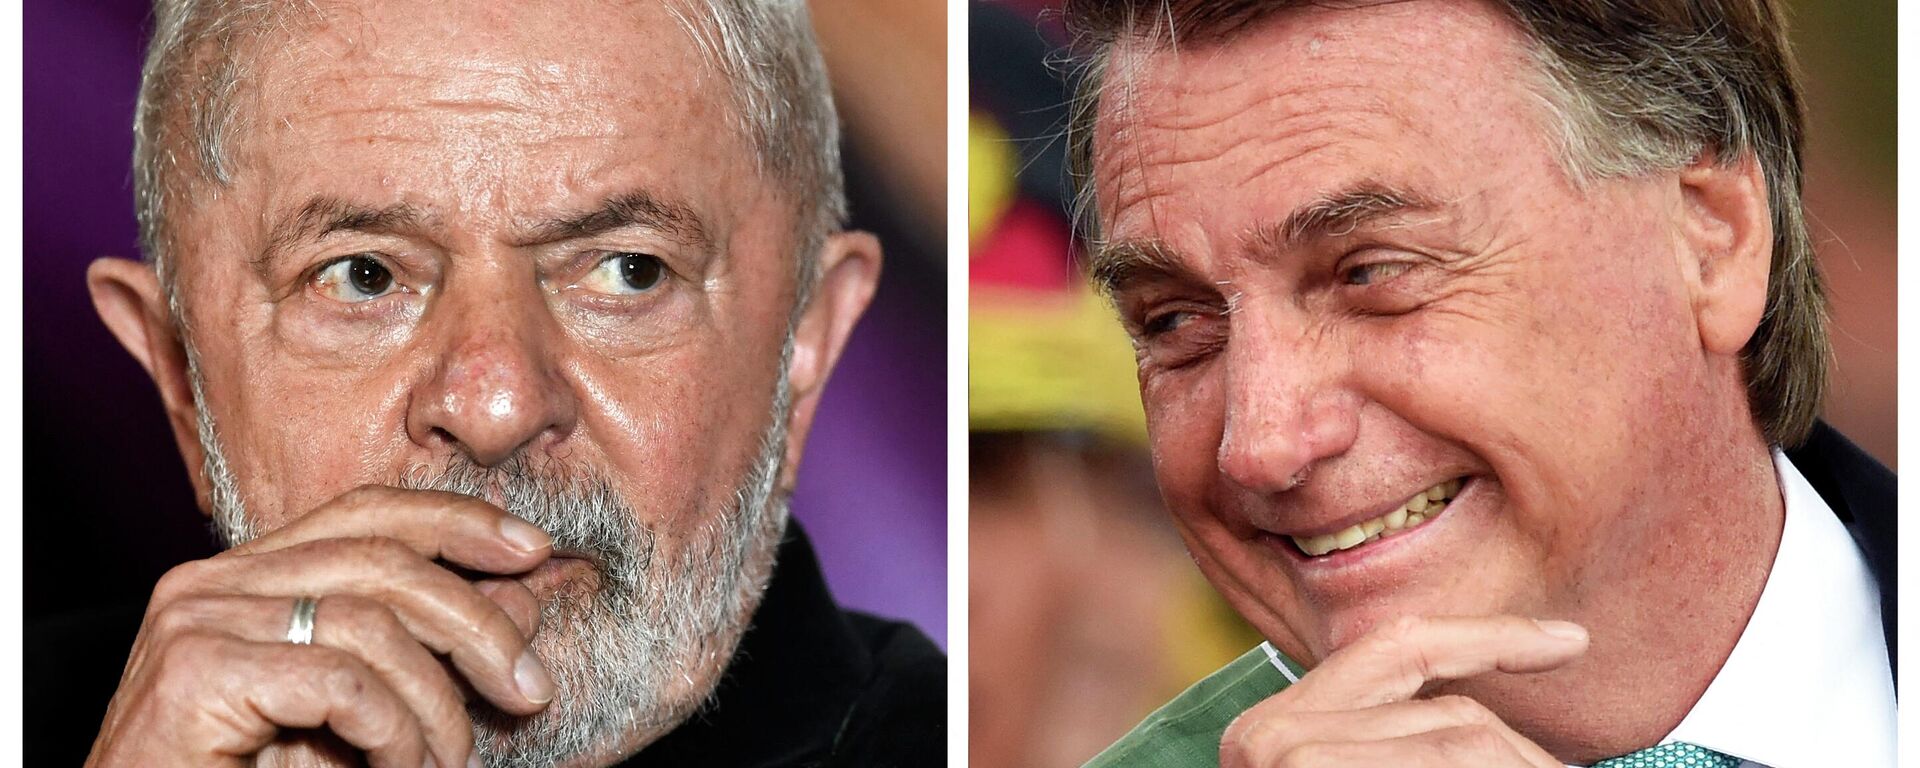 El ex presidente brasileño, Luiz Inácio Lula da Silva (2003-2011) y el presidente actual del país, Jair Bolsonaro - Sputnik Mundo, 1920, 29.10.2022